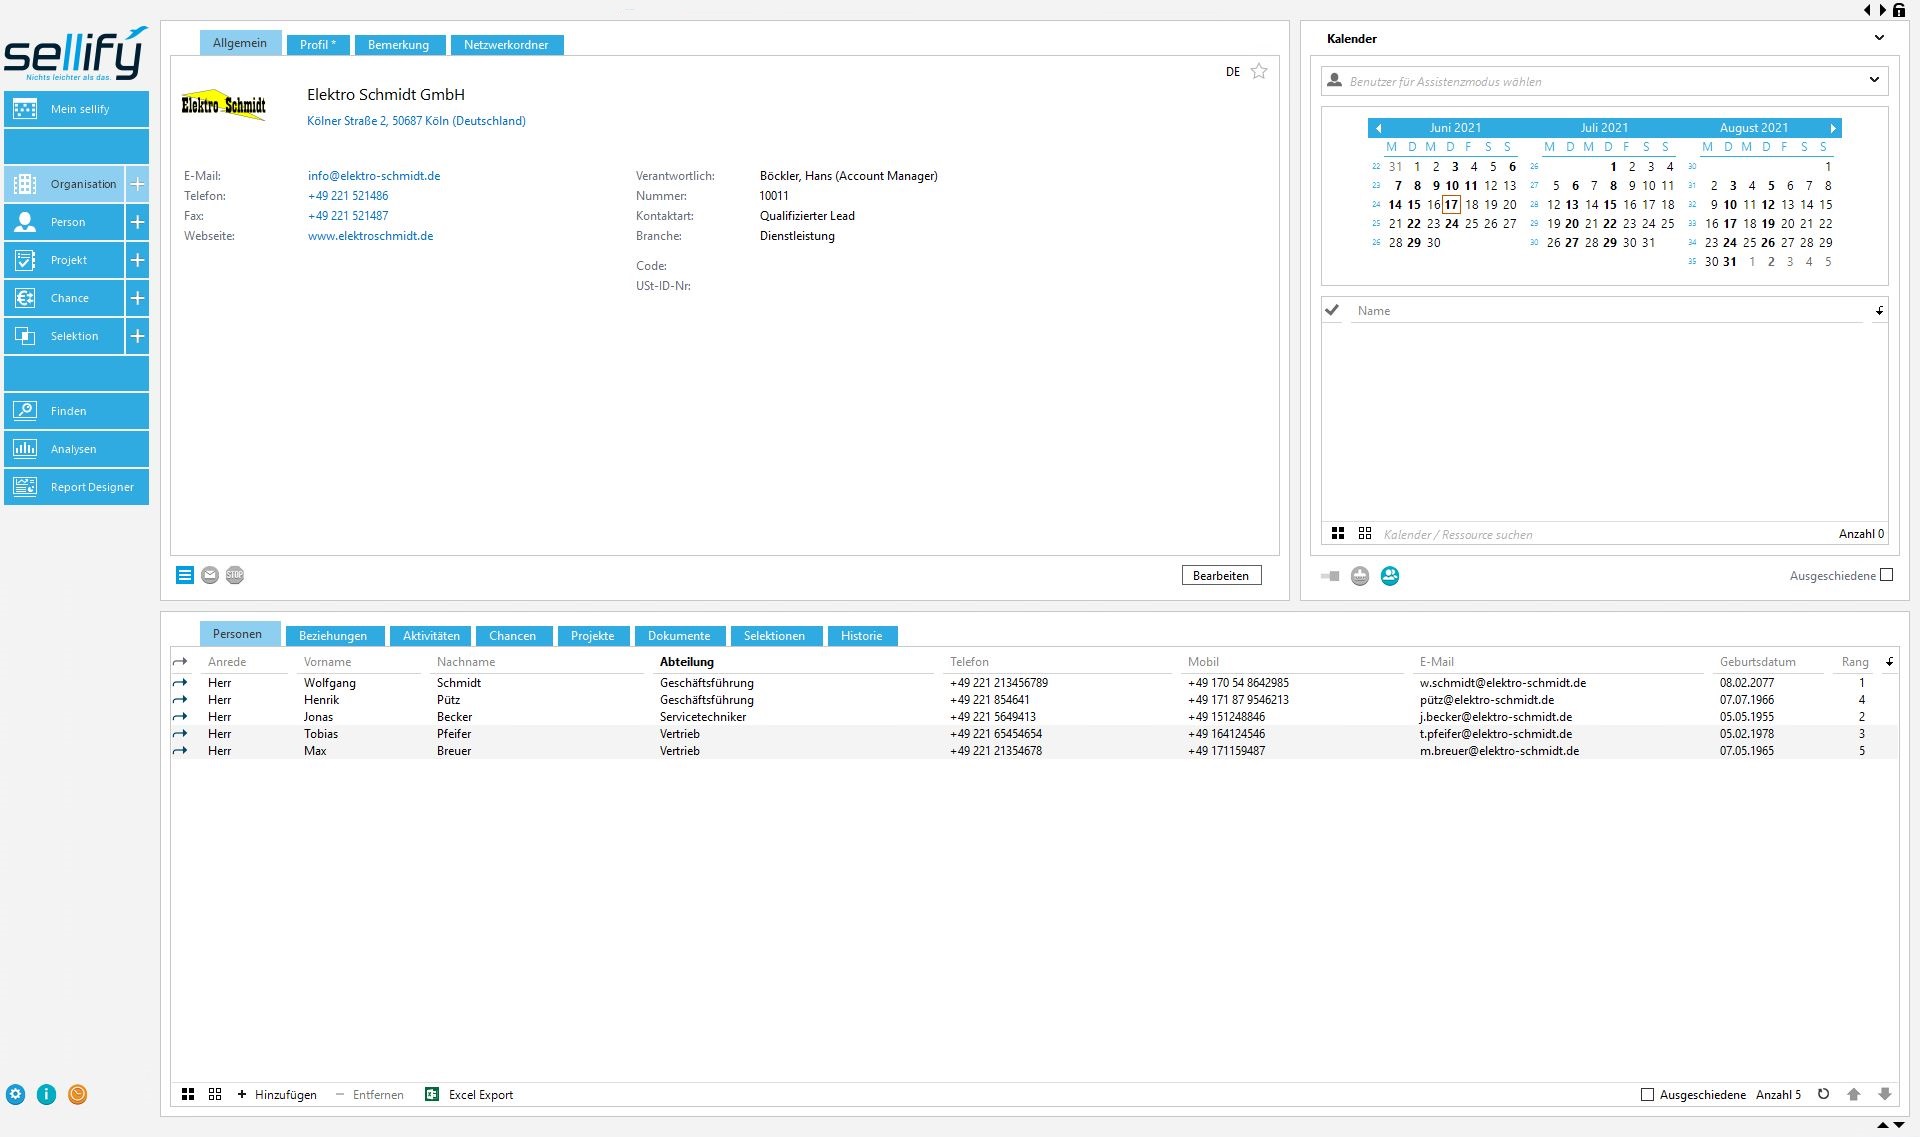 Das Bild zeigt einen Screenshot aus sellify zu einer Organisation mit Stammdaten und verknüpften Personen.